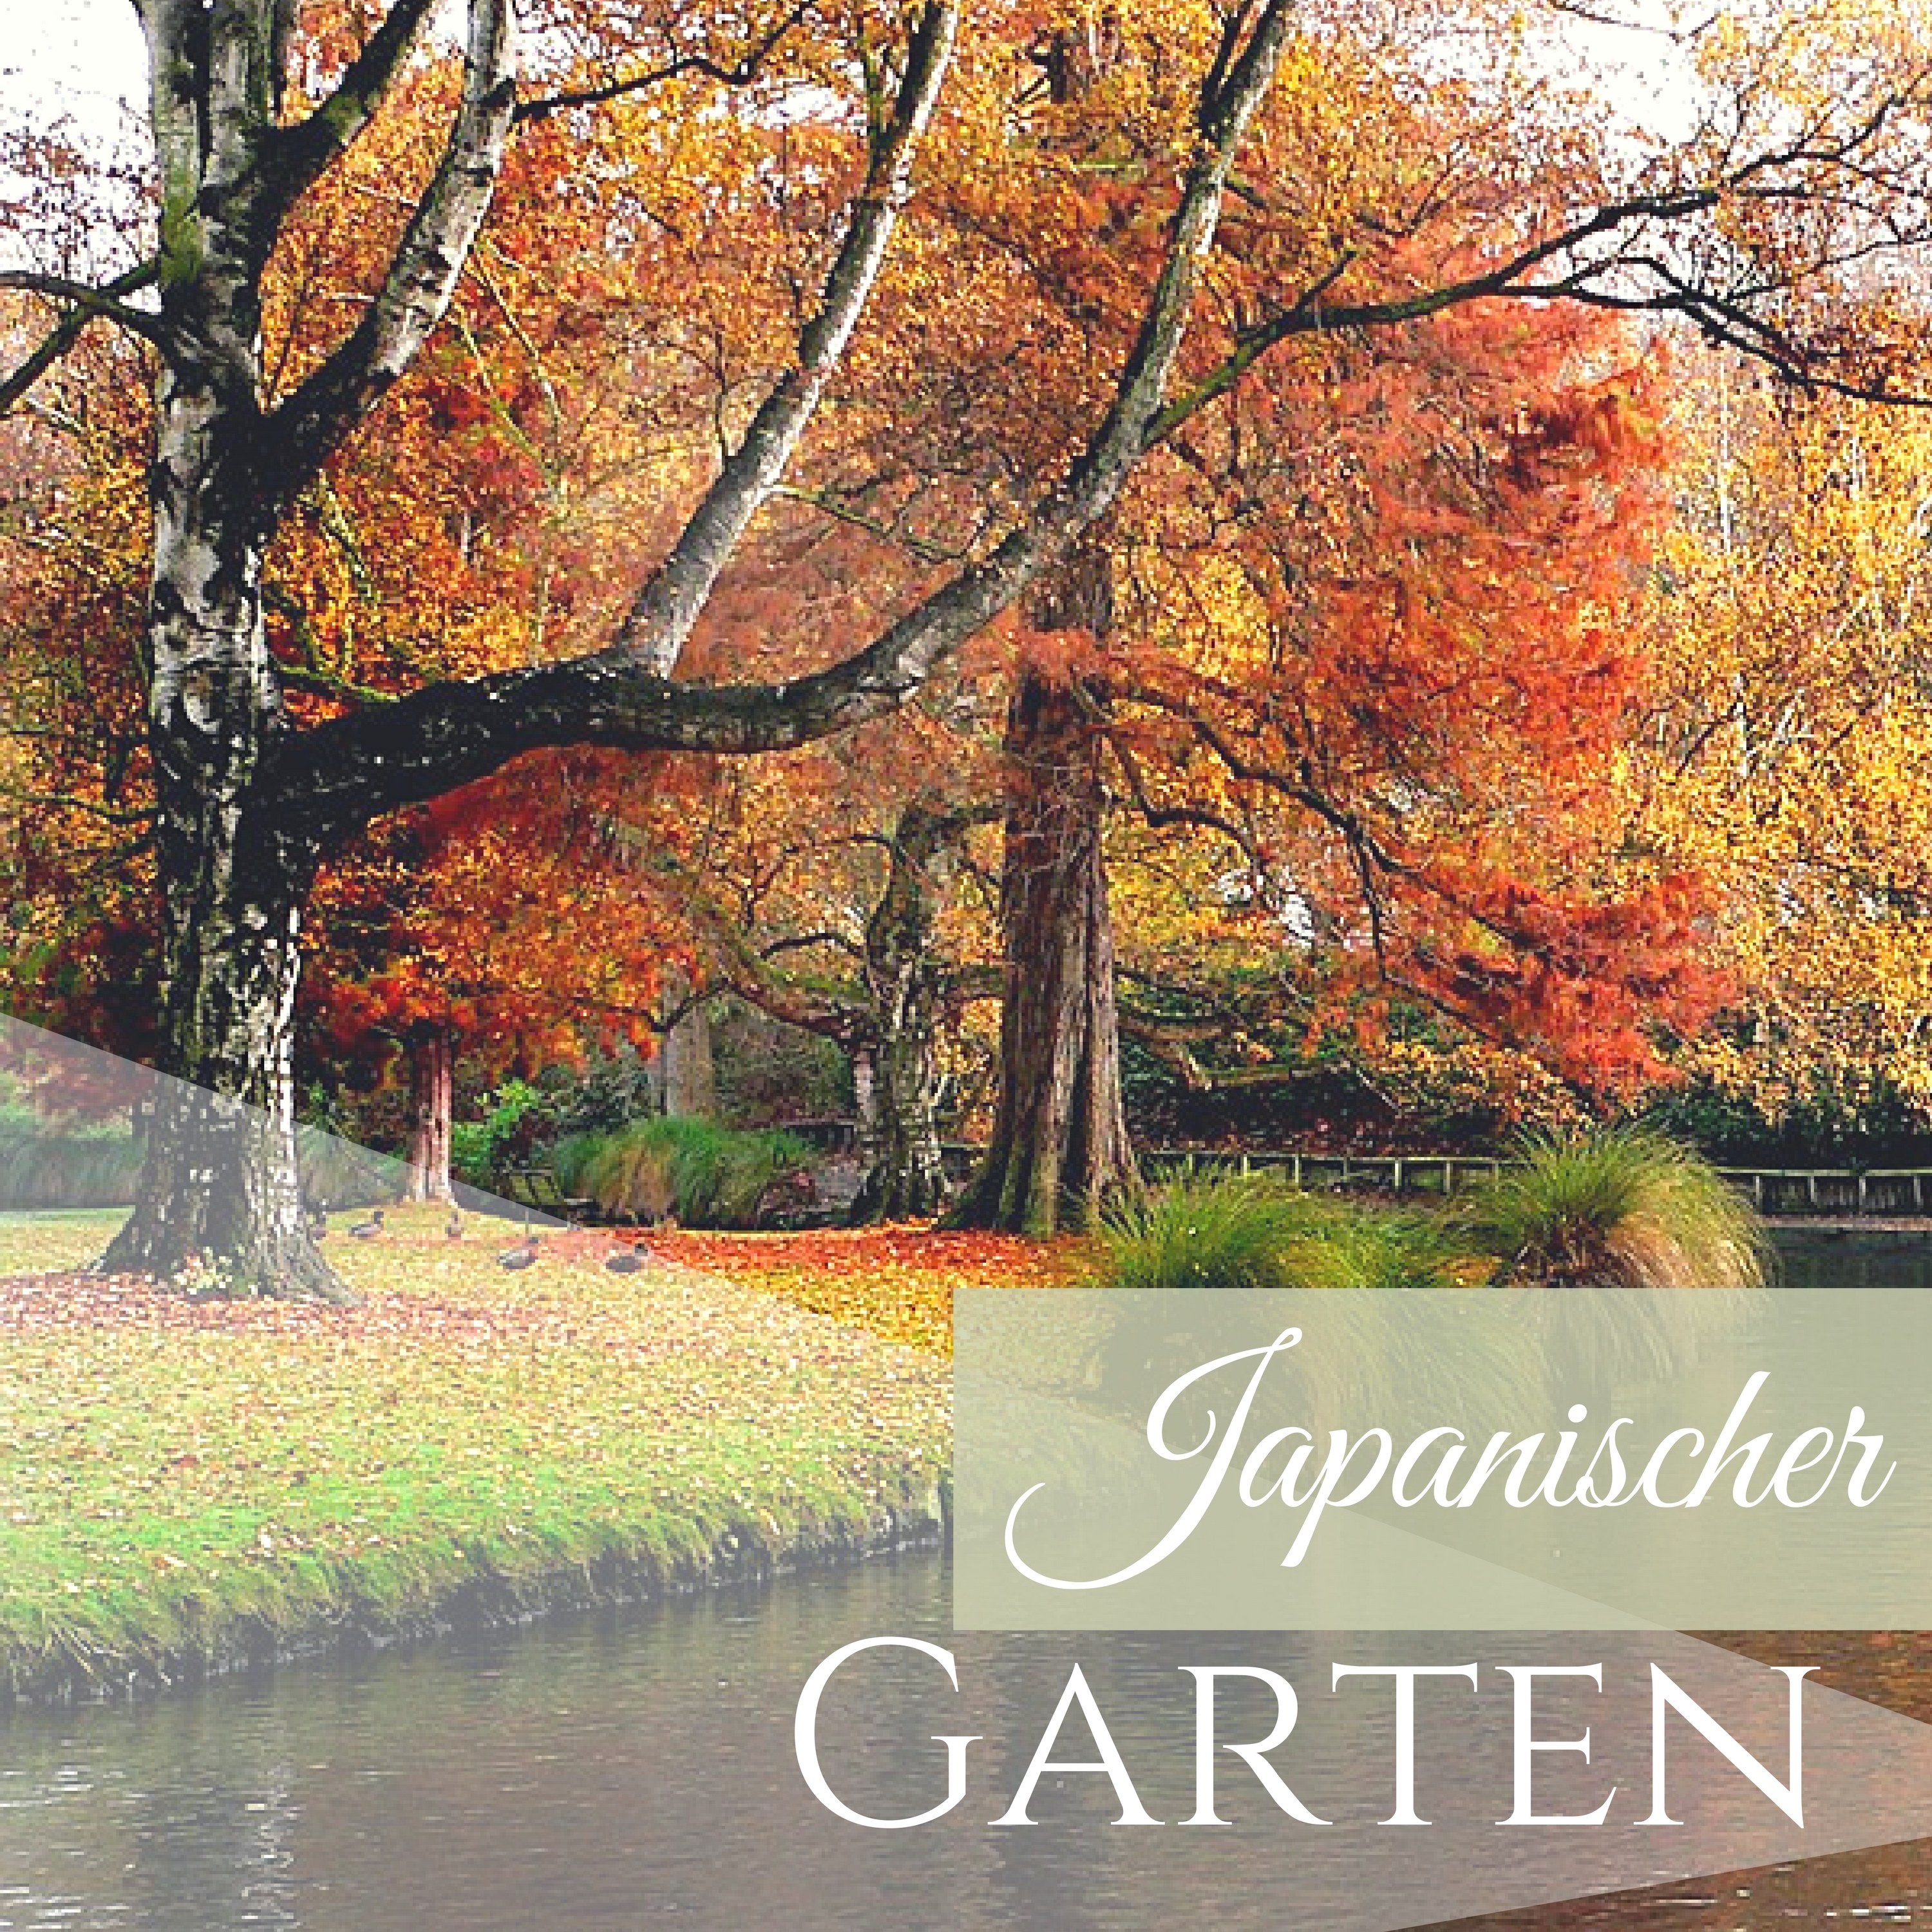 Japanischer Garten - Asiatische Meditationsmusik für Tiefenentspannung & Entspannungstherapie